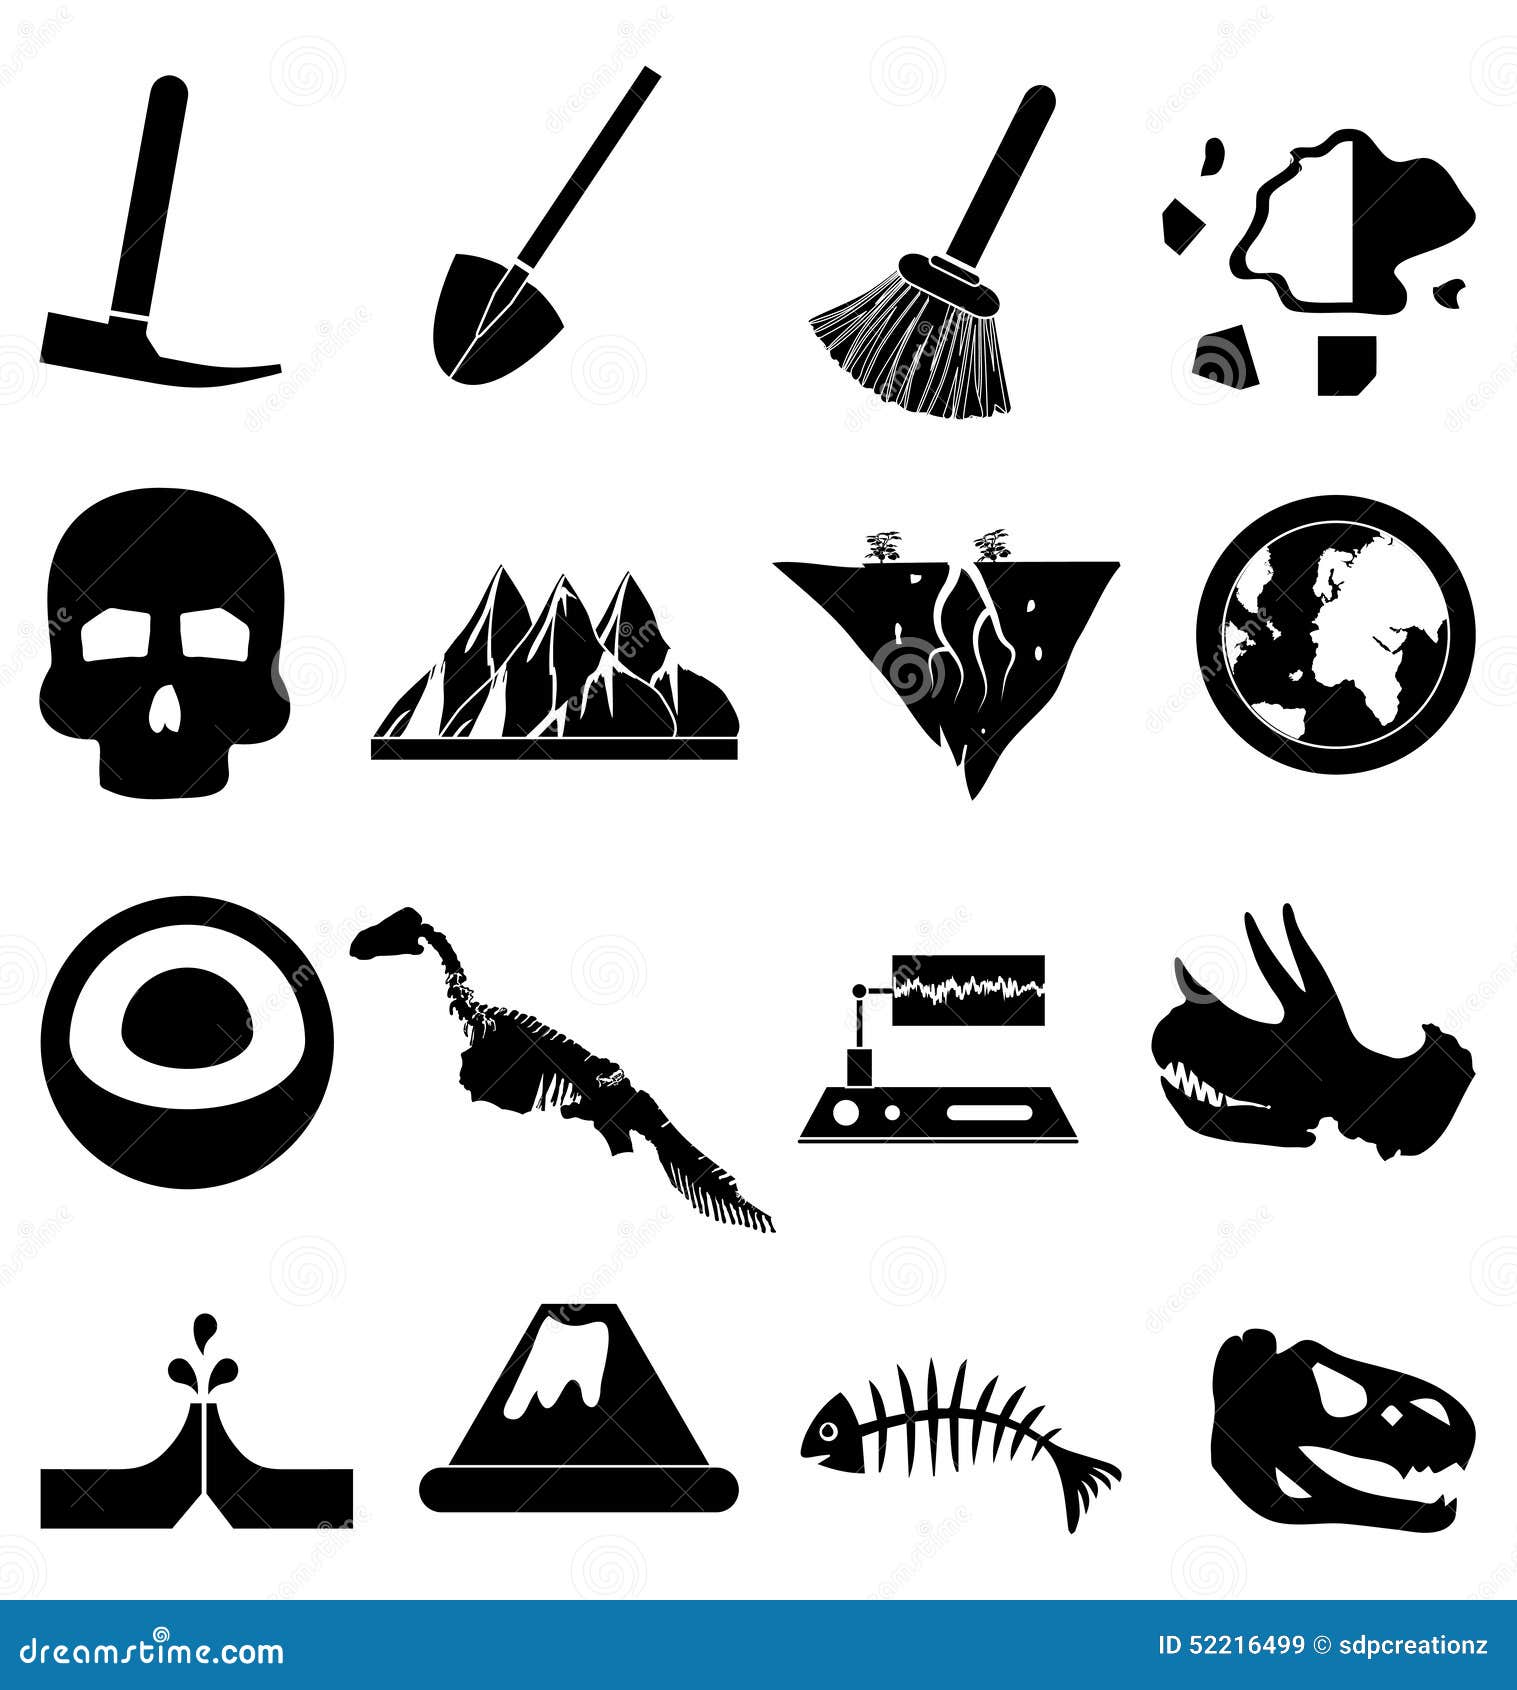 geology icons set